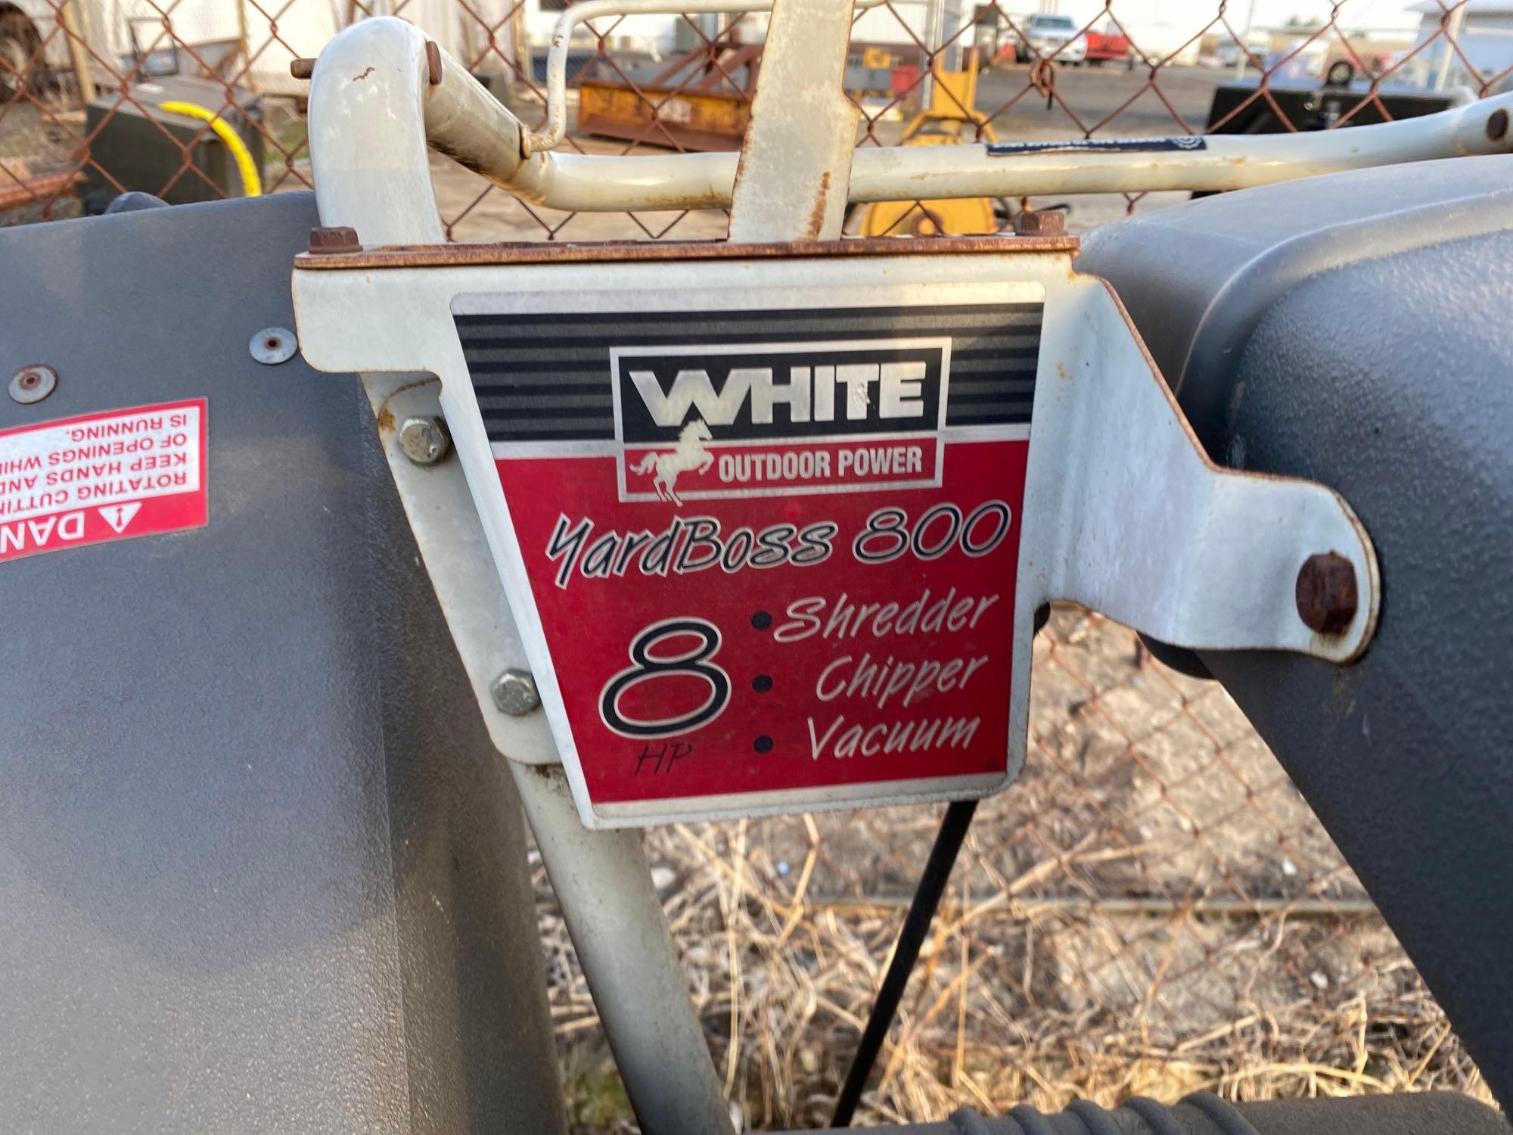 Image for White Yard Boss 800 Shredder Chipper Vacuum 